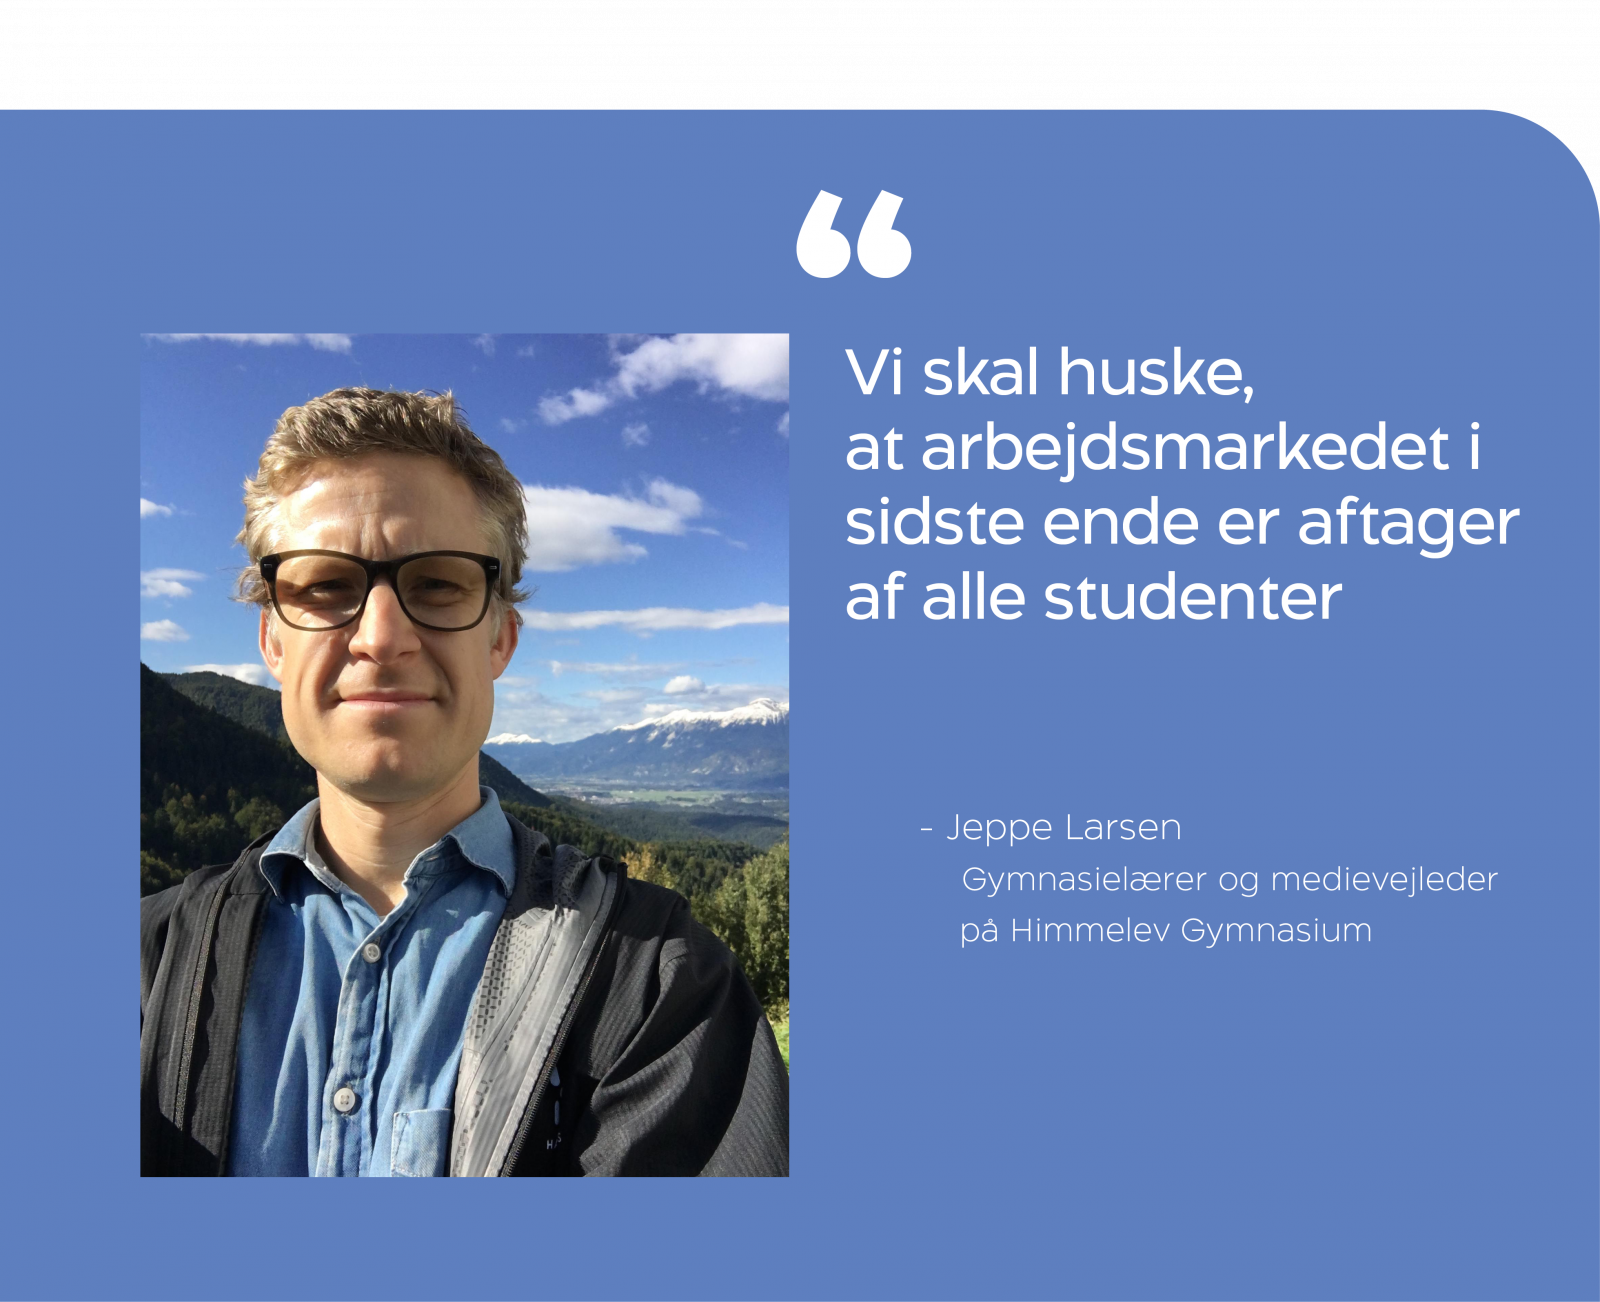 Jeppe Larsen siger "Vi skal huske, at arbejdsmarkedet i sidste ende er aftager af alle studenter".